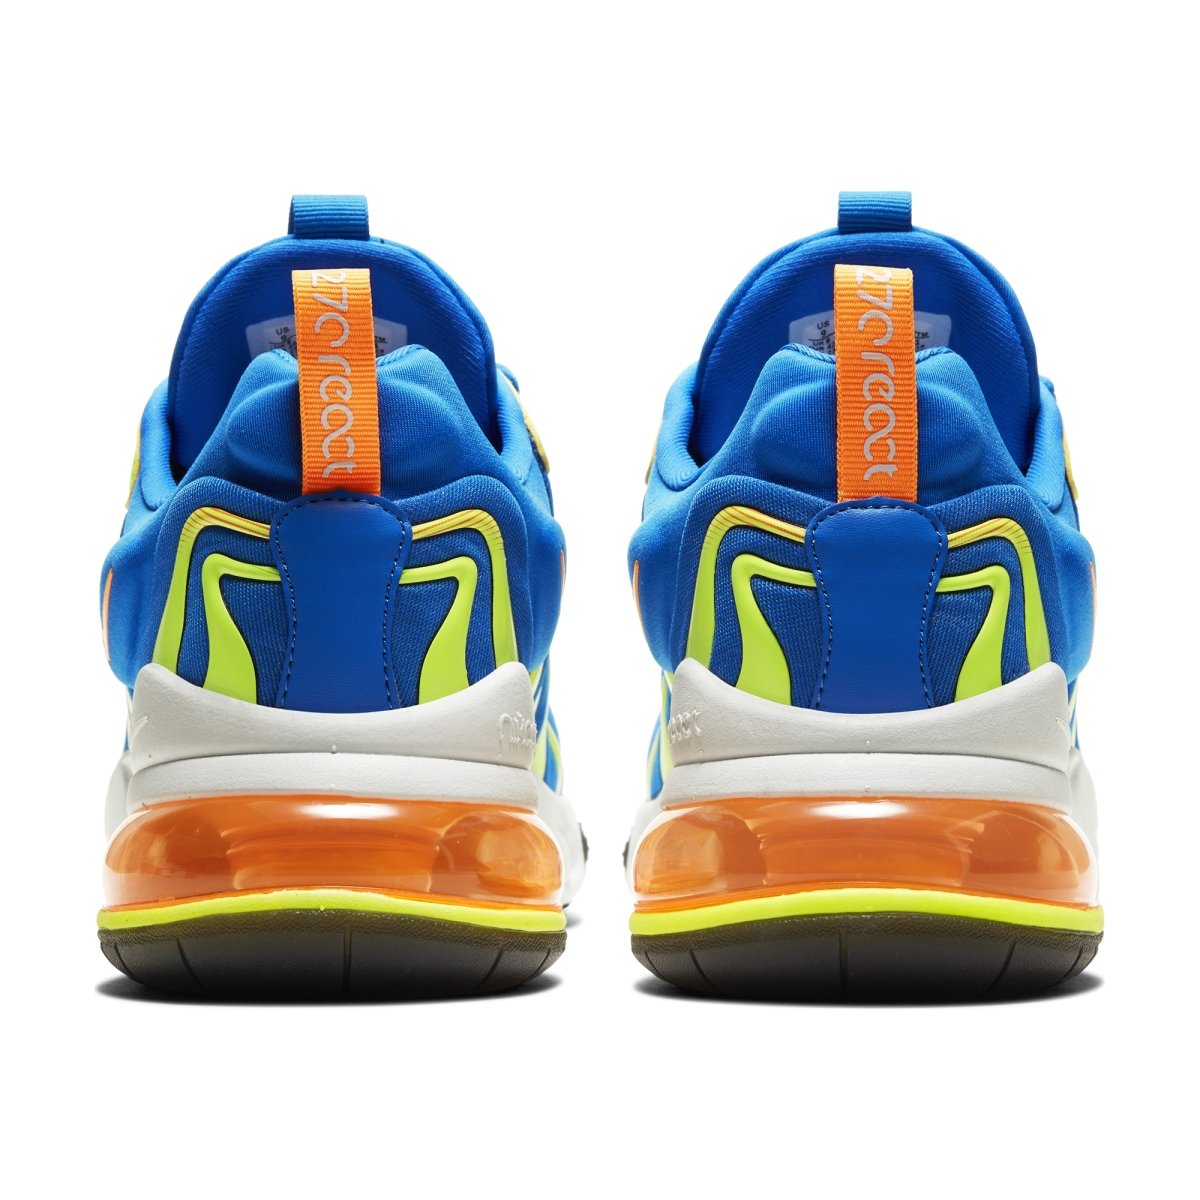 Nike Air Max 270 React Eng (CD0113-401), Soar/T.Orange / 8.5